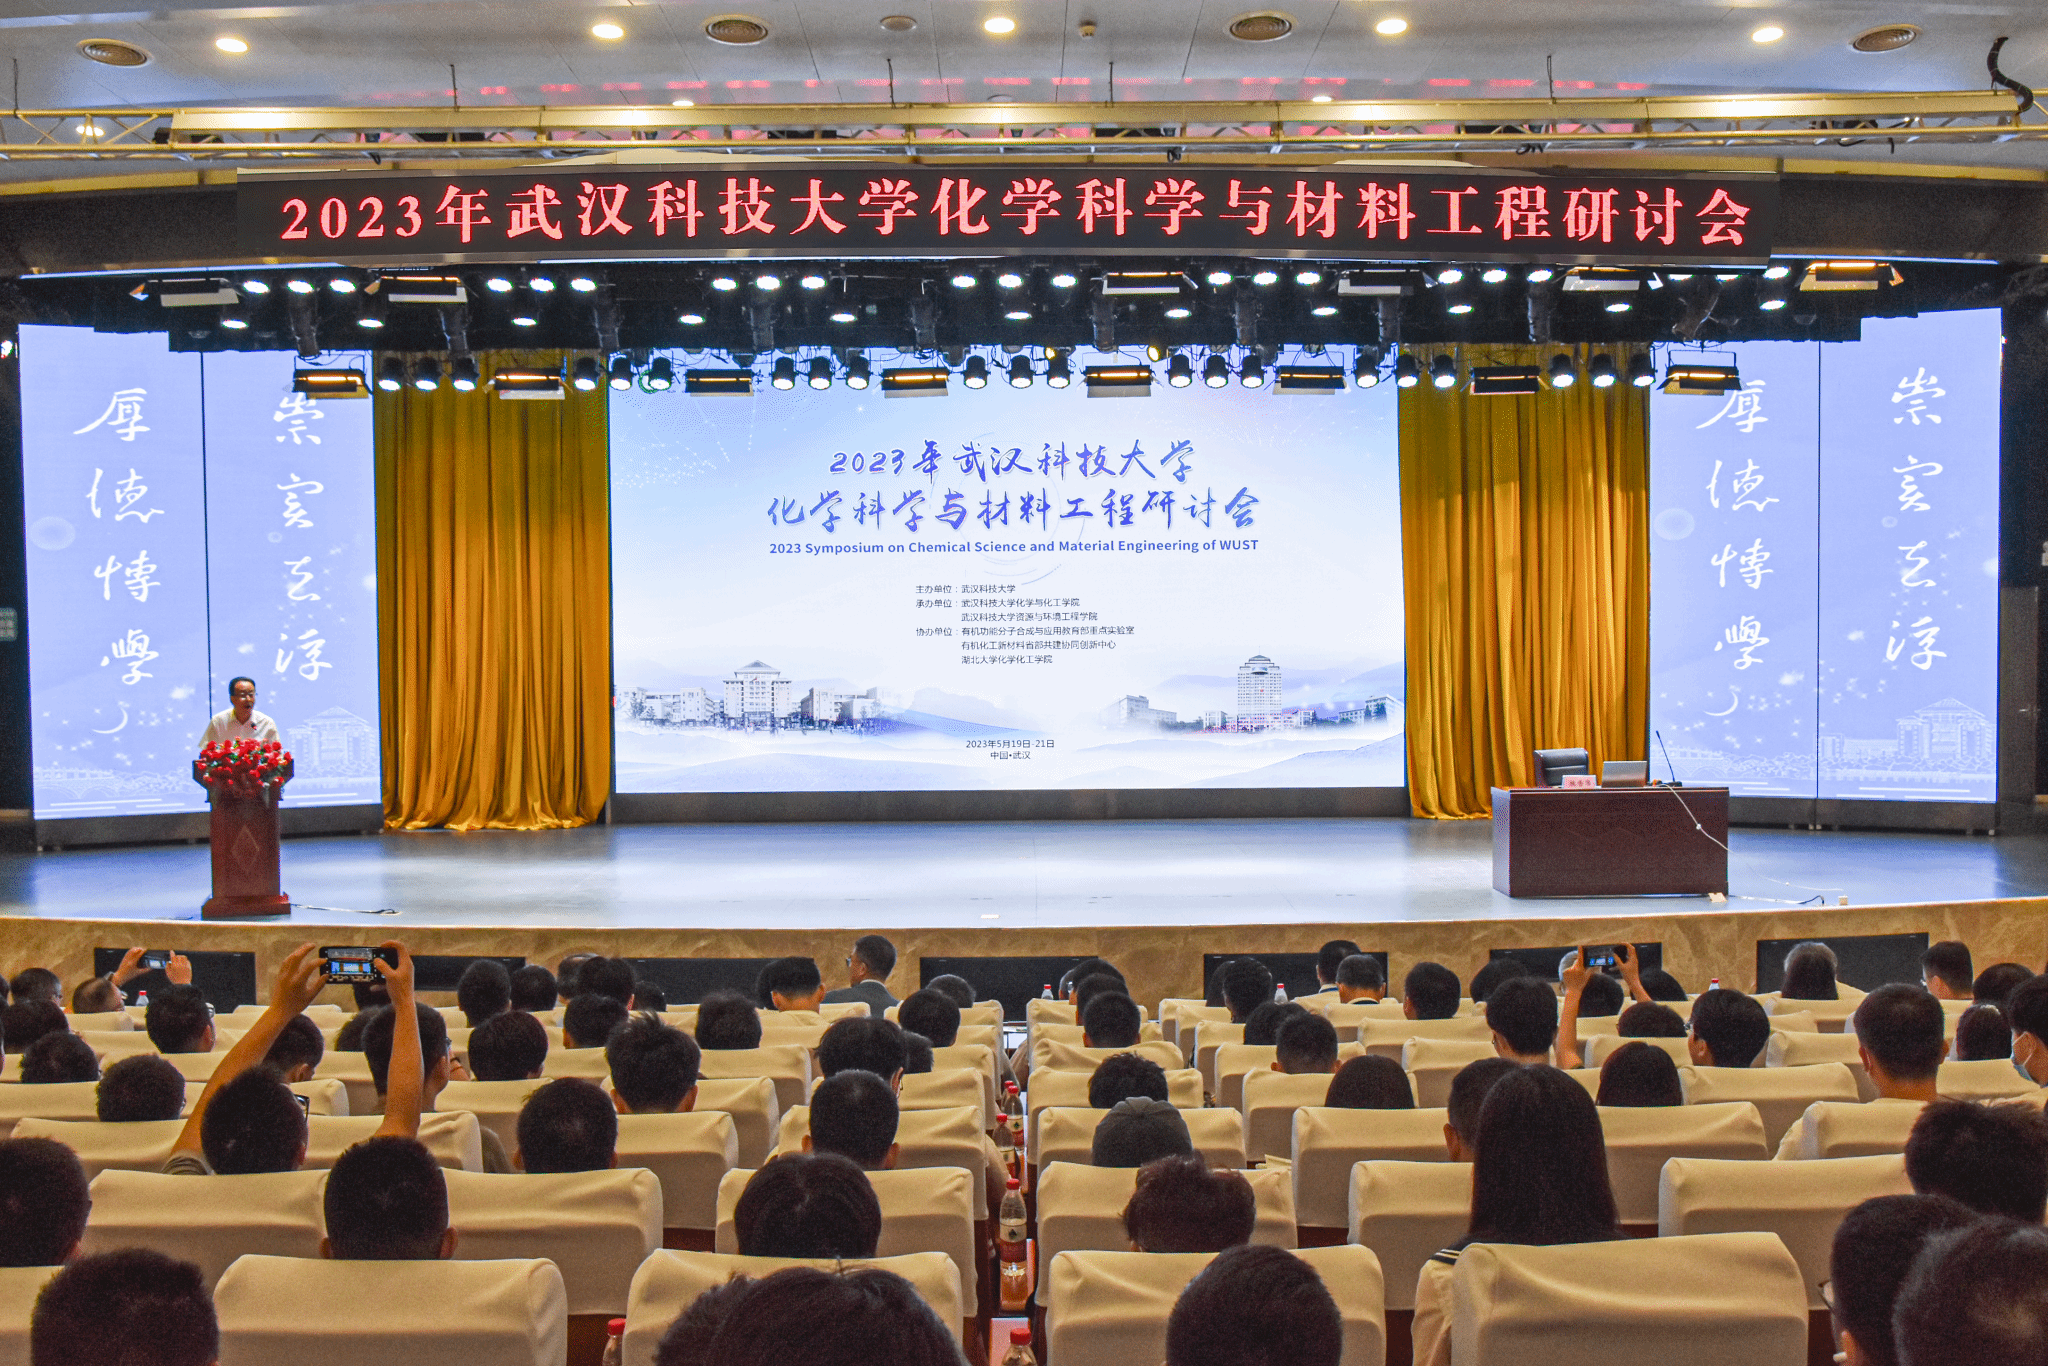 2023年武汉科技大学化学科学与材料工程研讨会成功开幕